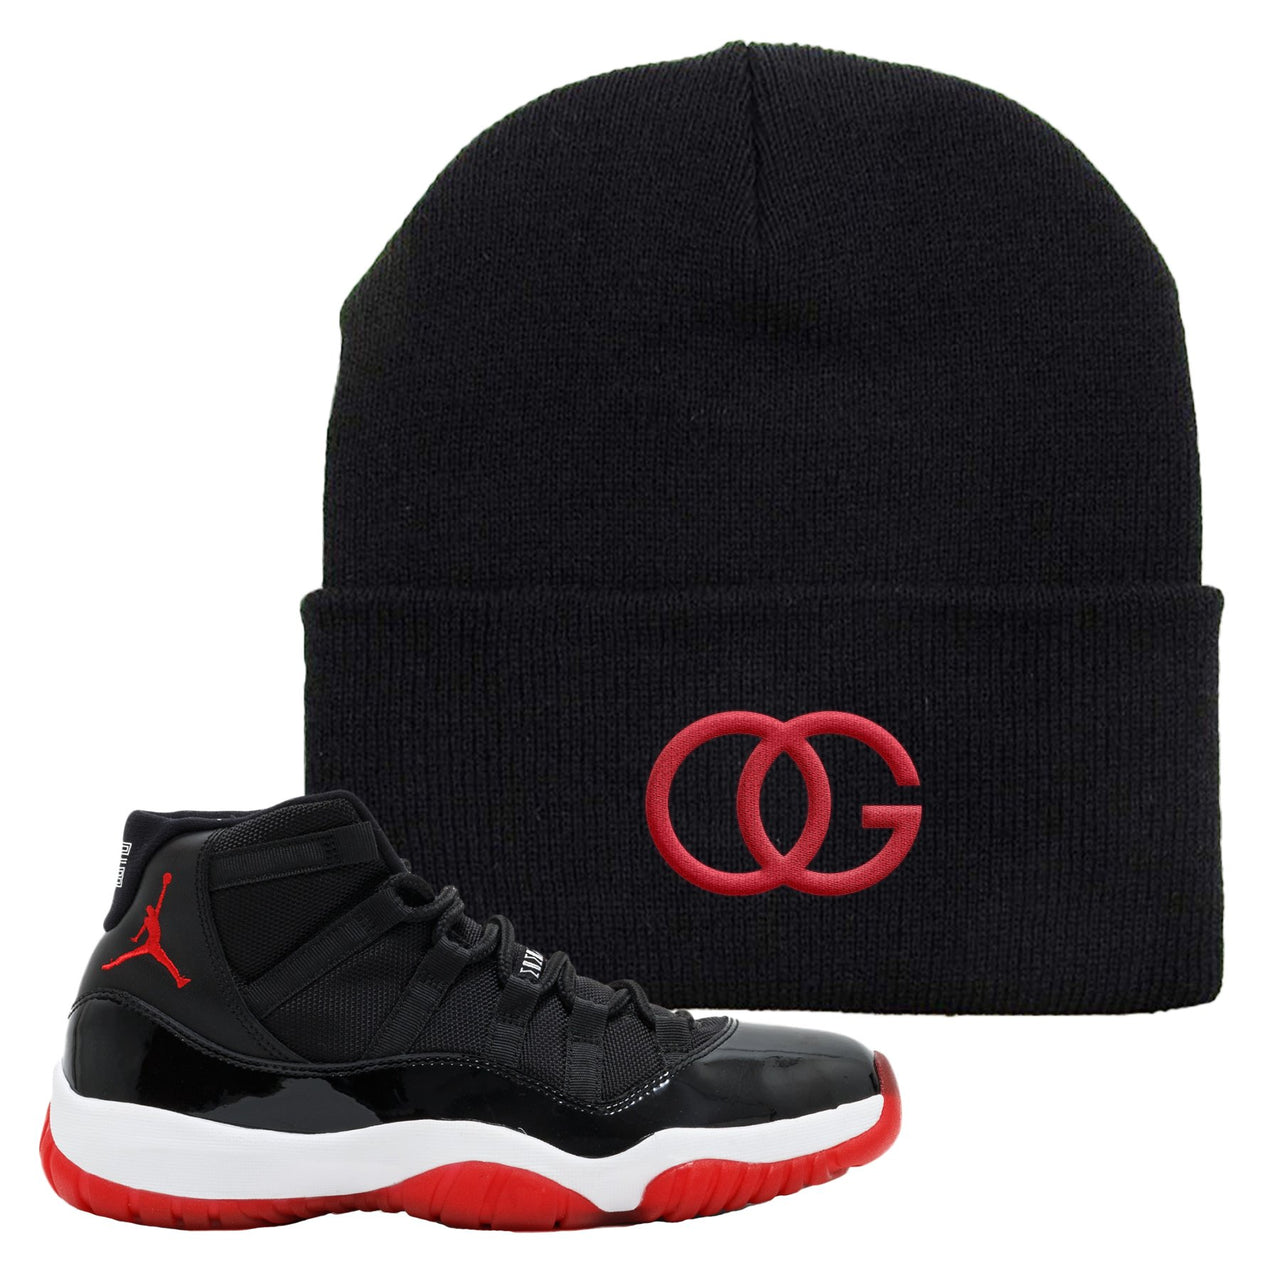 Jordan 11 Bred OG Black Sneaker Hook Up Beanie